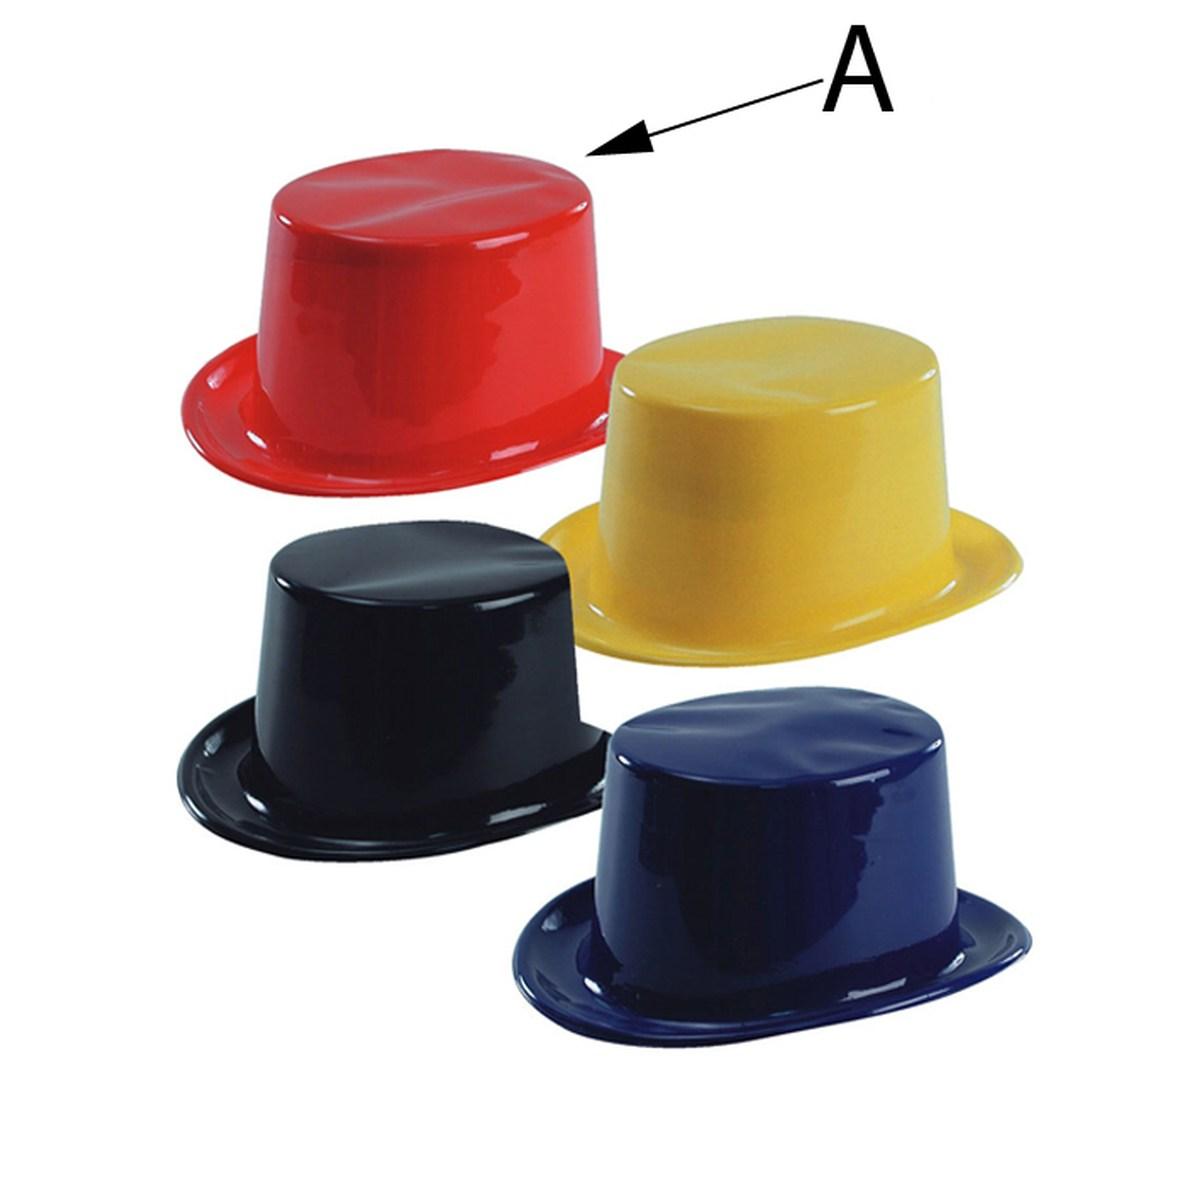 Cappello Cilindro Eco PVC 4 Modelli